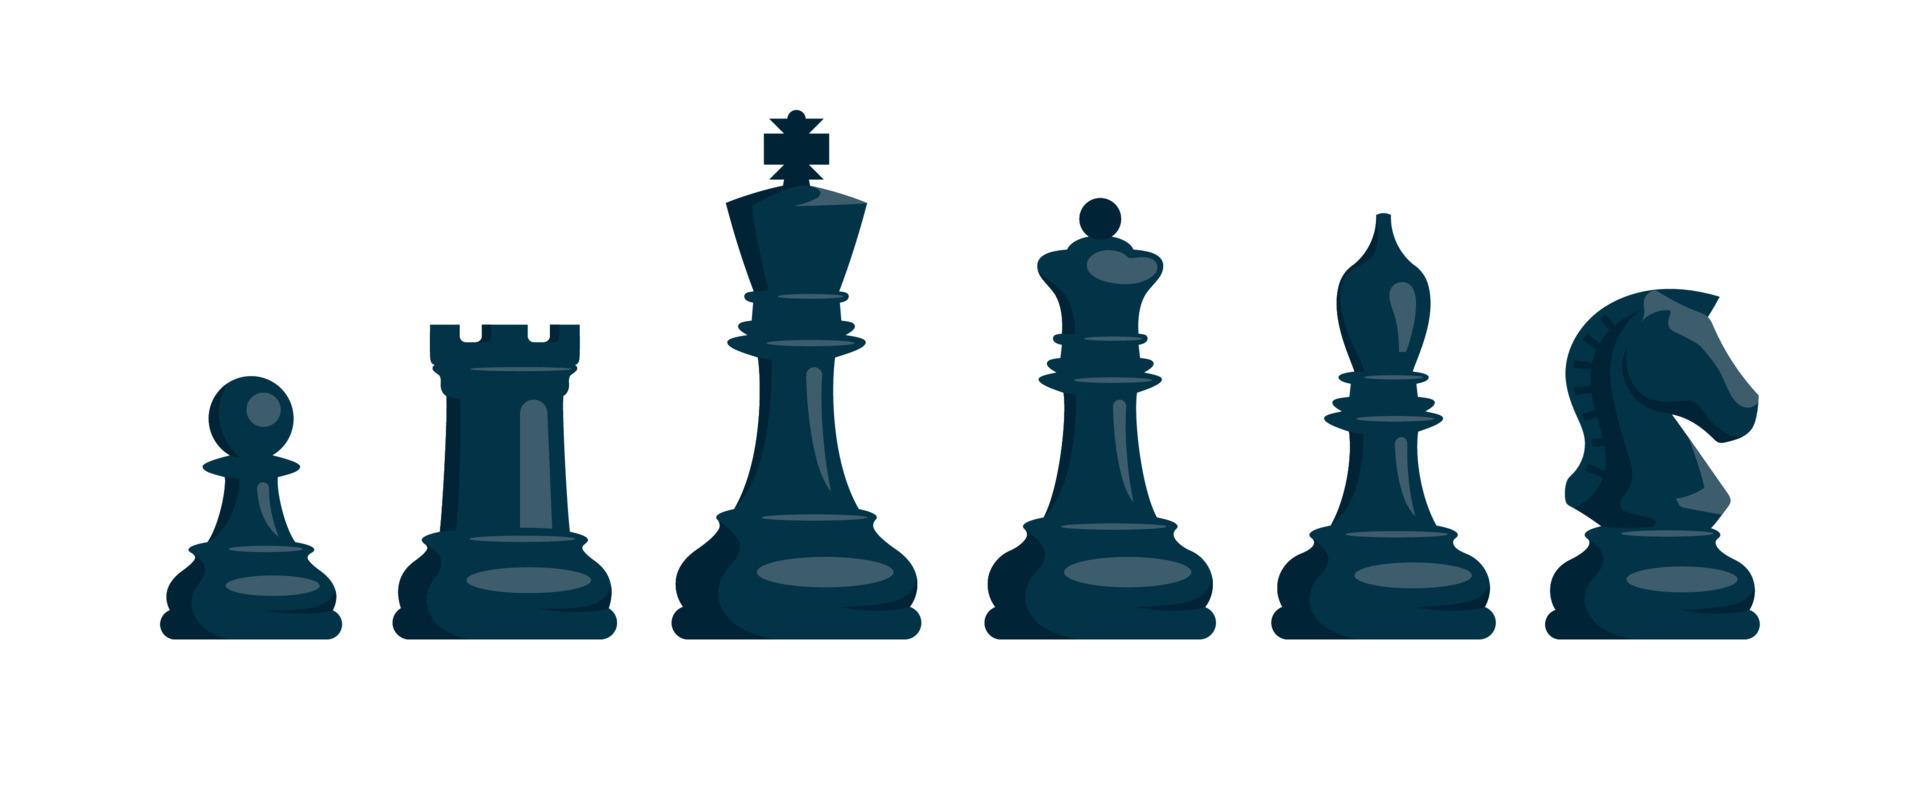 xadrez. conjunto de peças de xadrez preto. cavalo, torre, peão